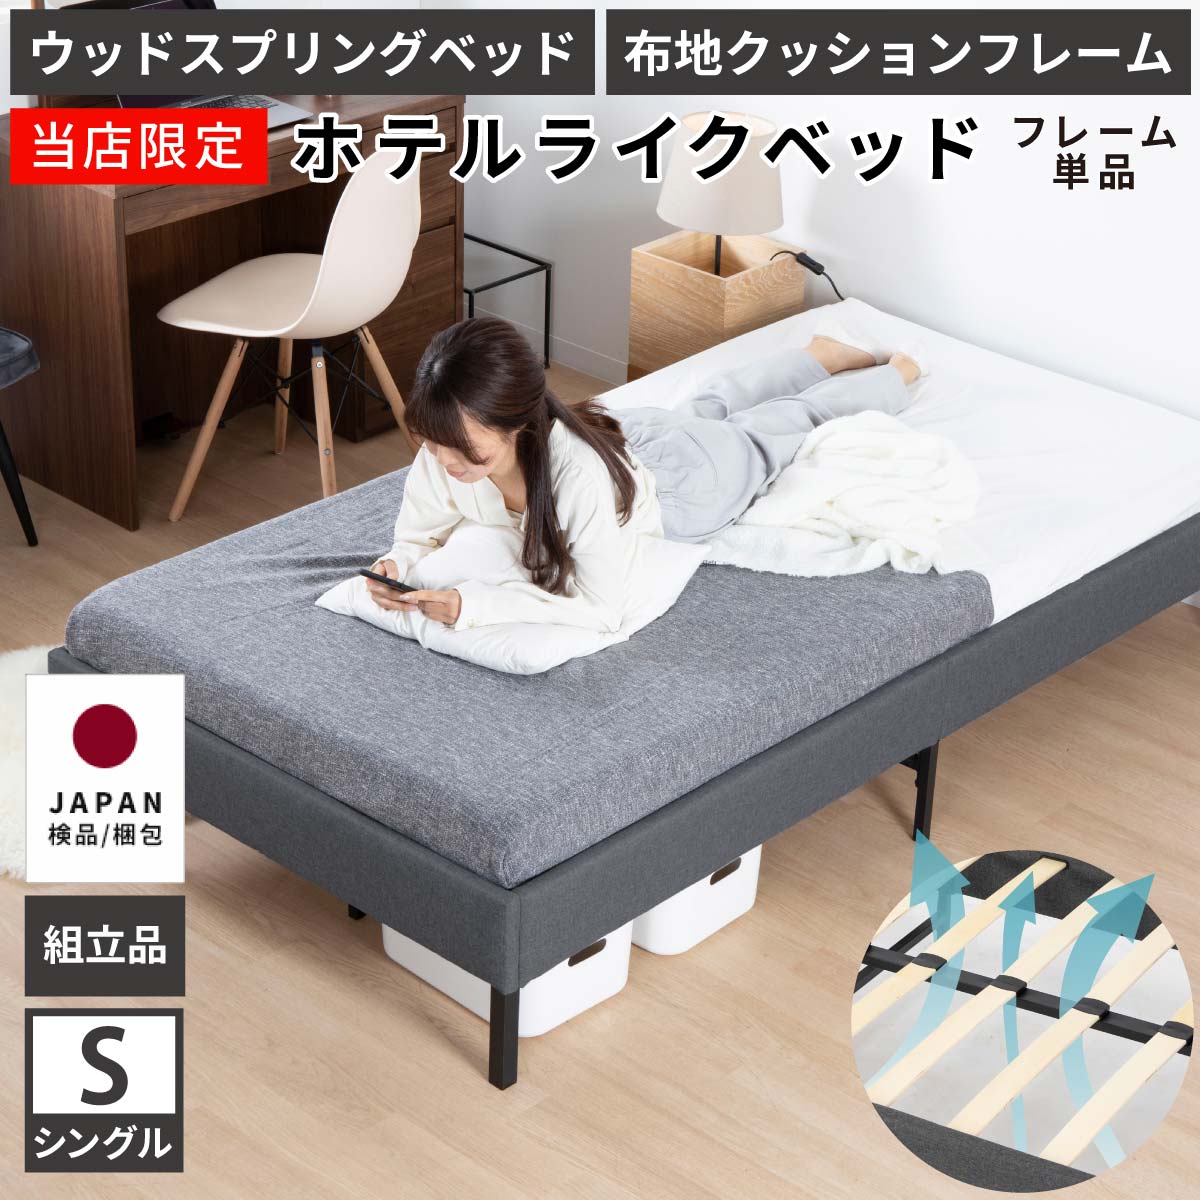 14000円高級品販売 正規取扱店 ベッドかなりお買い得！！ ベッド